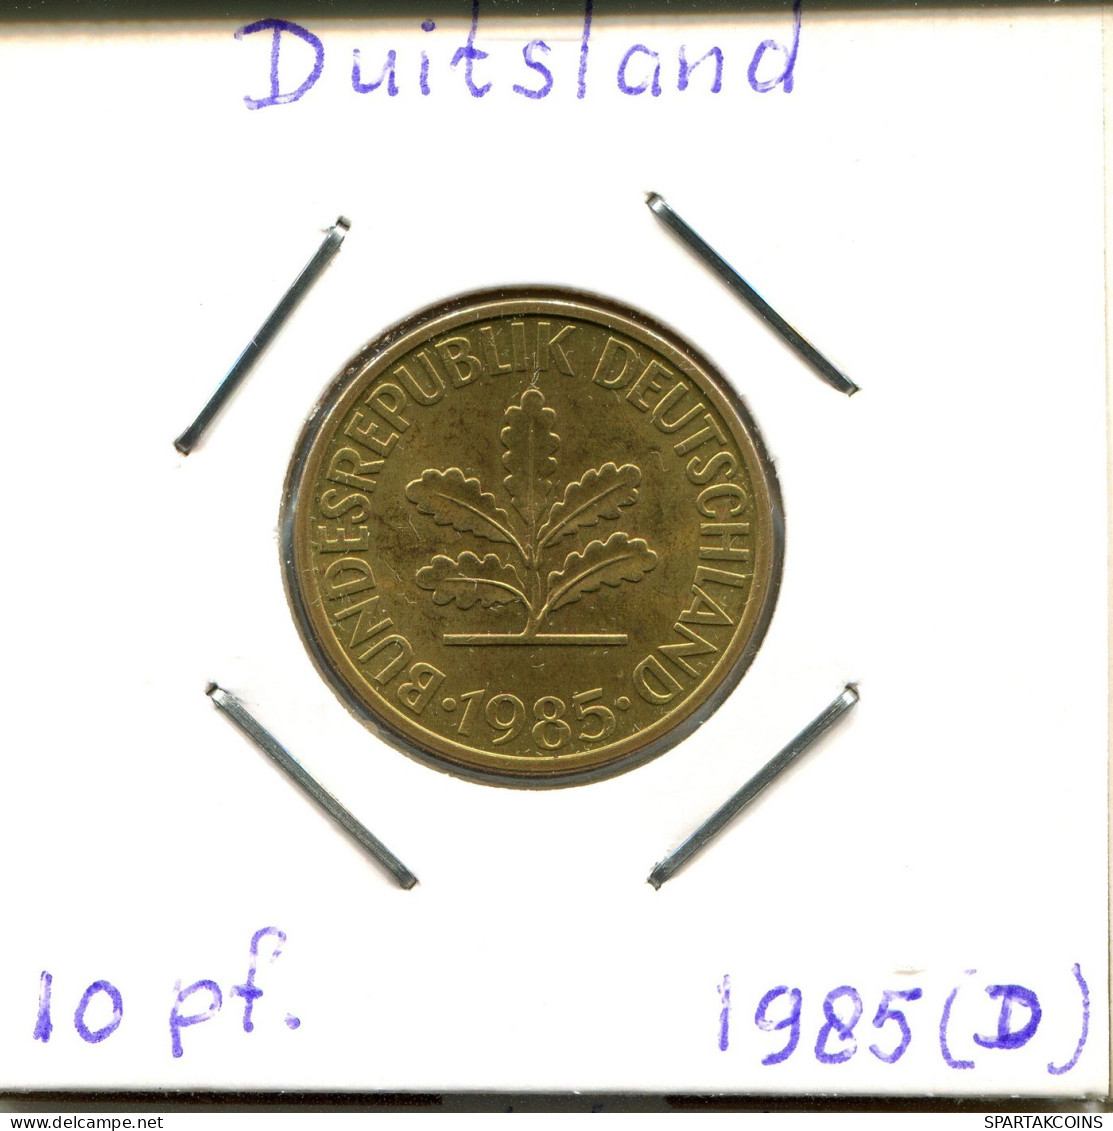 10 PFENNIG 1985 D BRD ALEMANIA Moneda GERMANY #DB451.E.A - 10 Pfennig